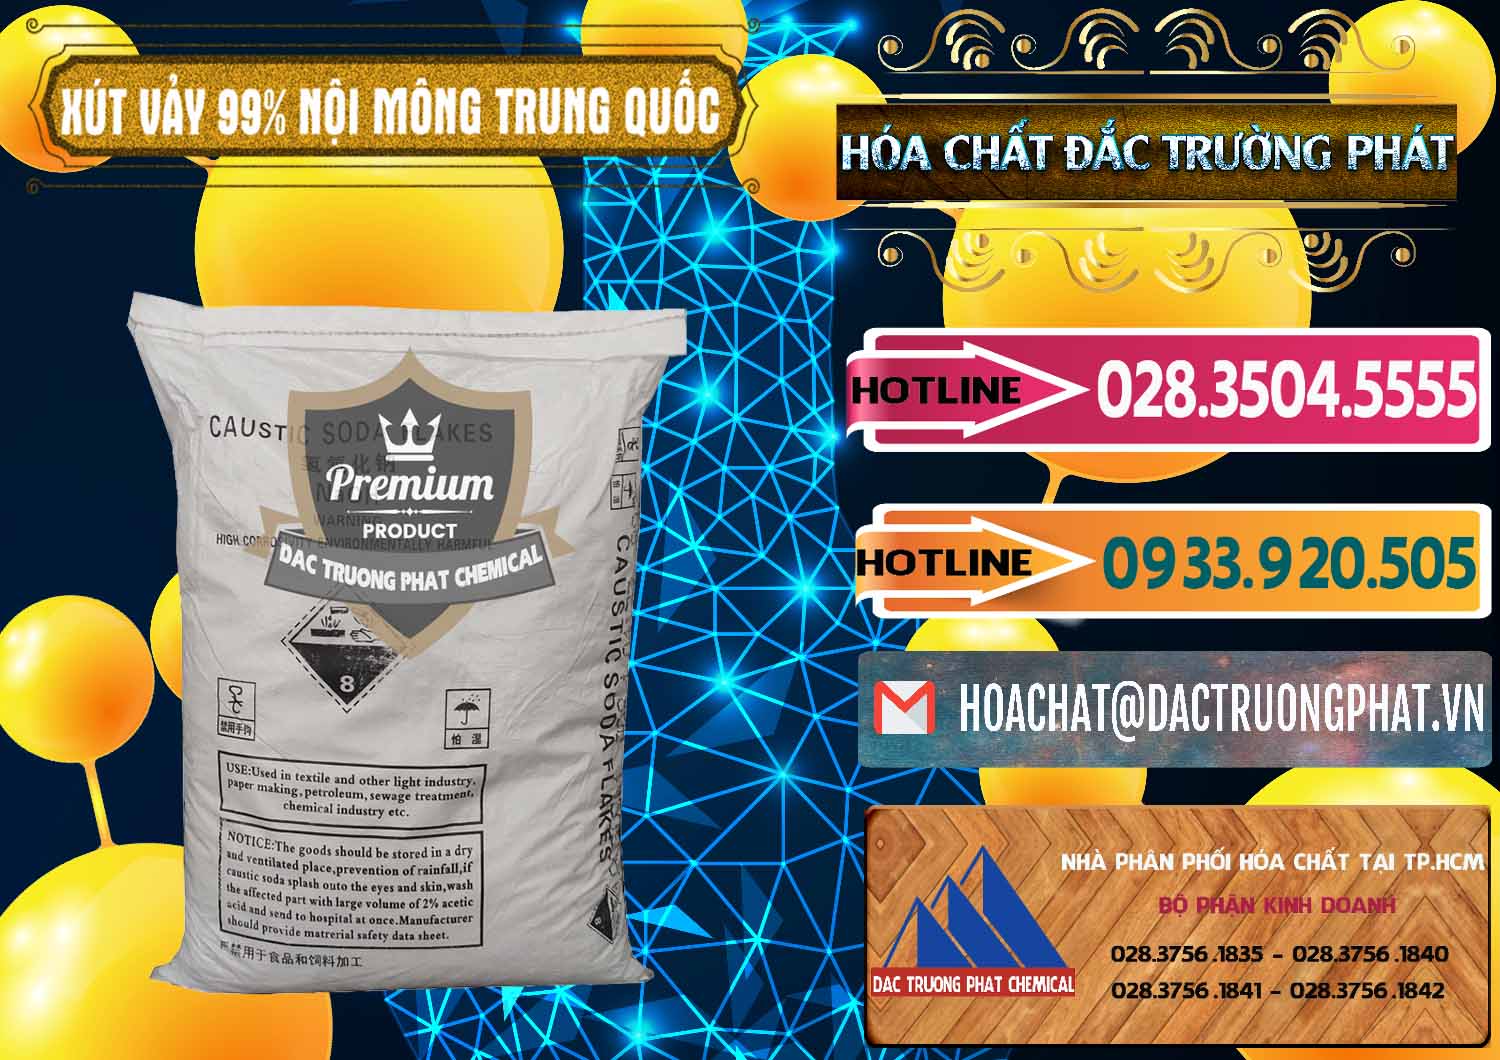 Công ty chuyên bán & cung cấp Xút Vảy - NaOH Vảy 99% Nội Mông Trung Quốc China - 0228 - Đơn vị chuyên cung cấp và bán hóa chất tại TP.HCM - dactruongphat.vn